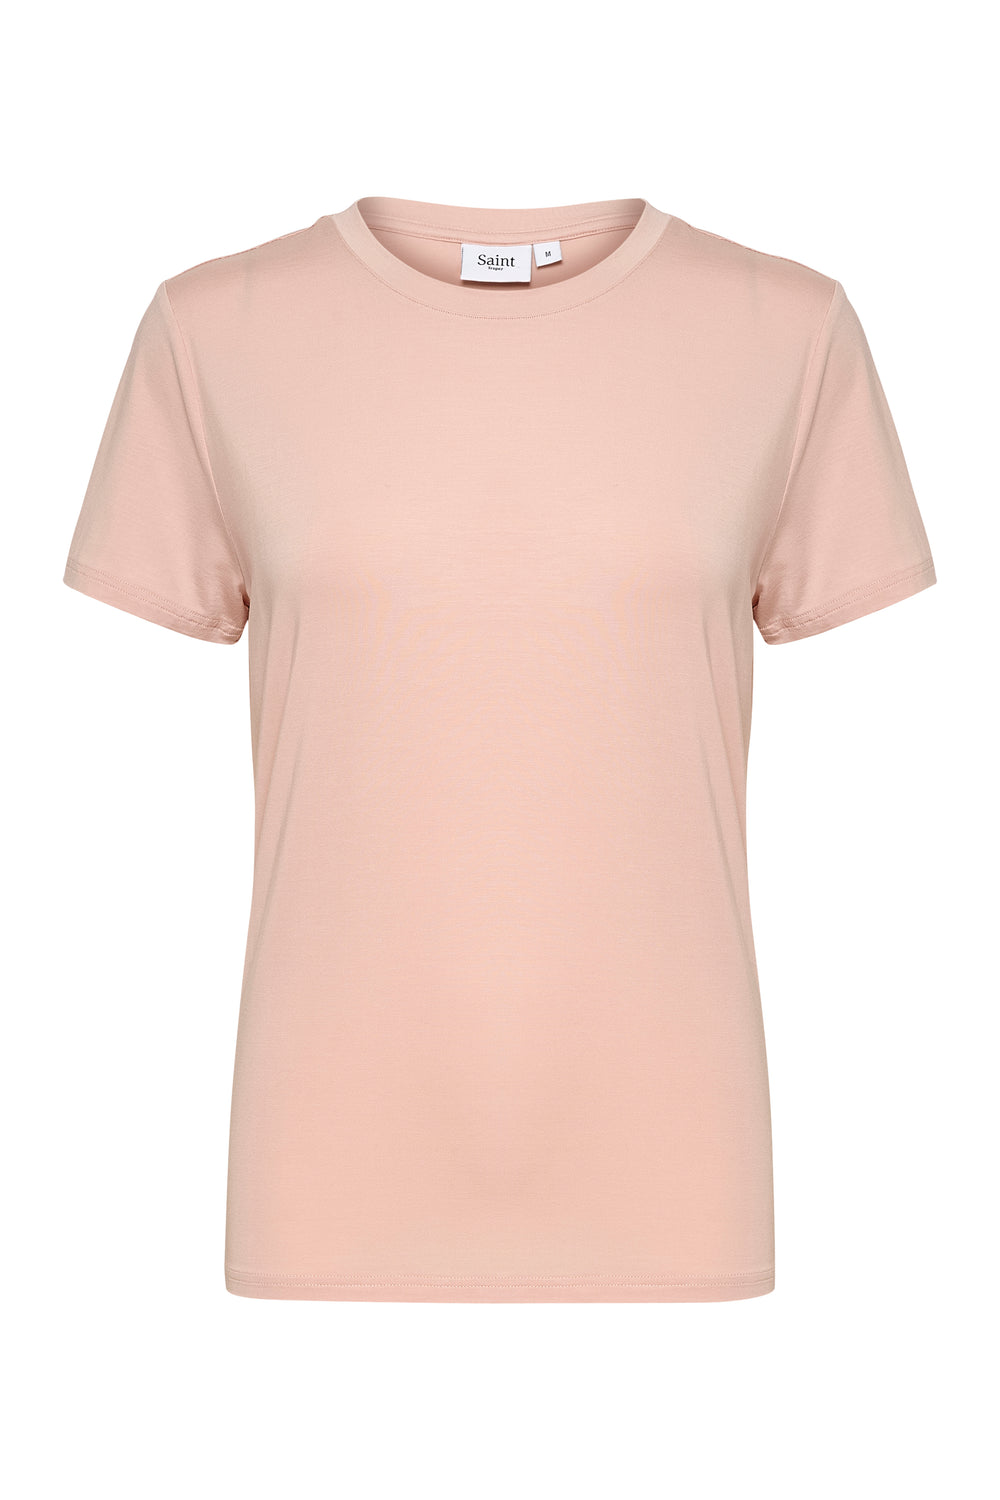 ADELIASZ Sepia Rose Reguläres T-Shirt